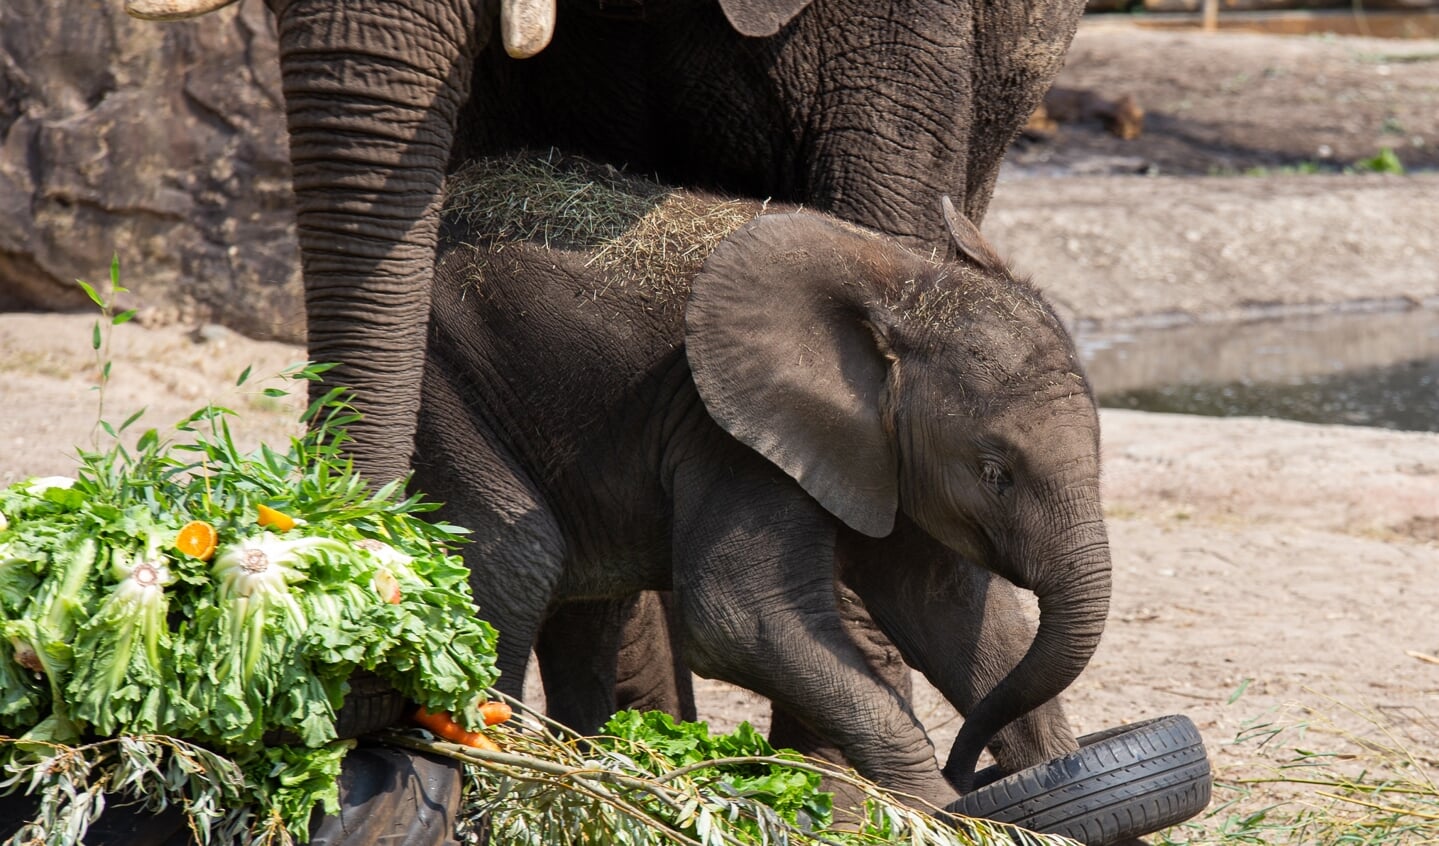 Afrikaanse olifant Bumi viert zijn eerste verjaardag in Ouwehands Dierenpark met moeder Duna, een taart van groenten en fruit en banden om mee te spelen.